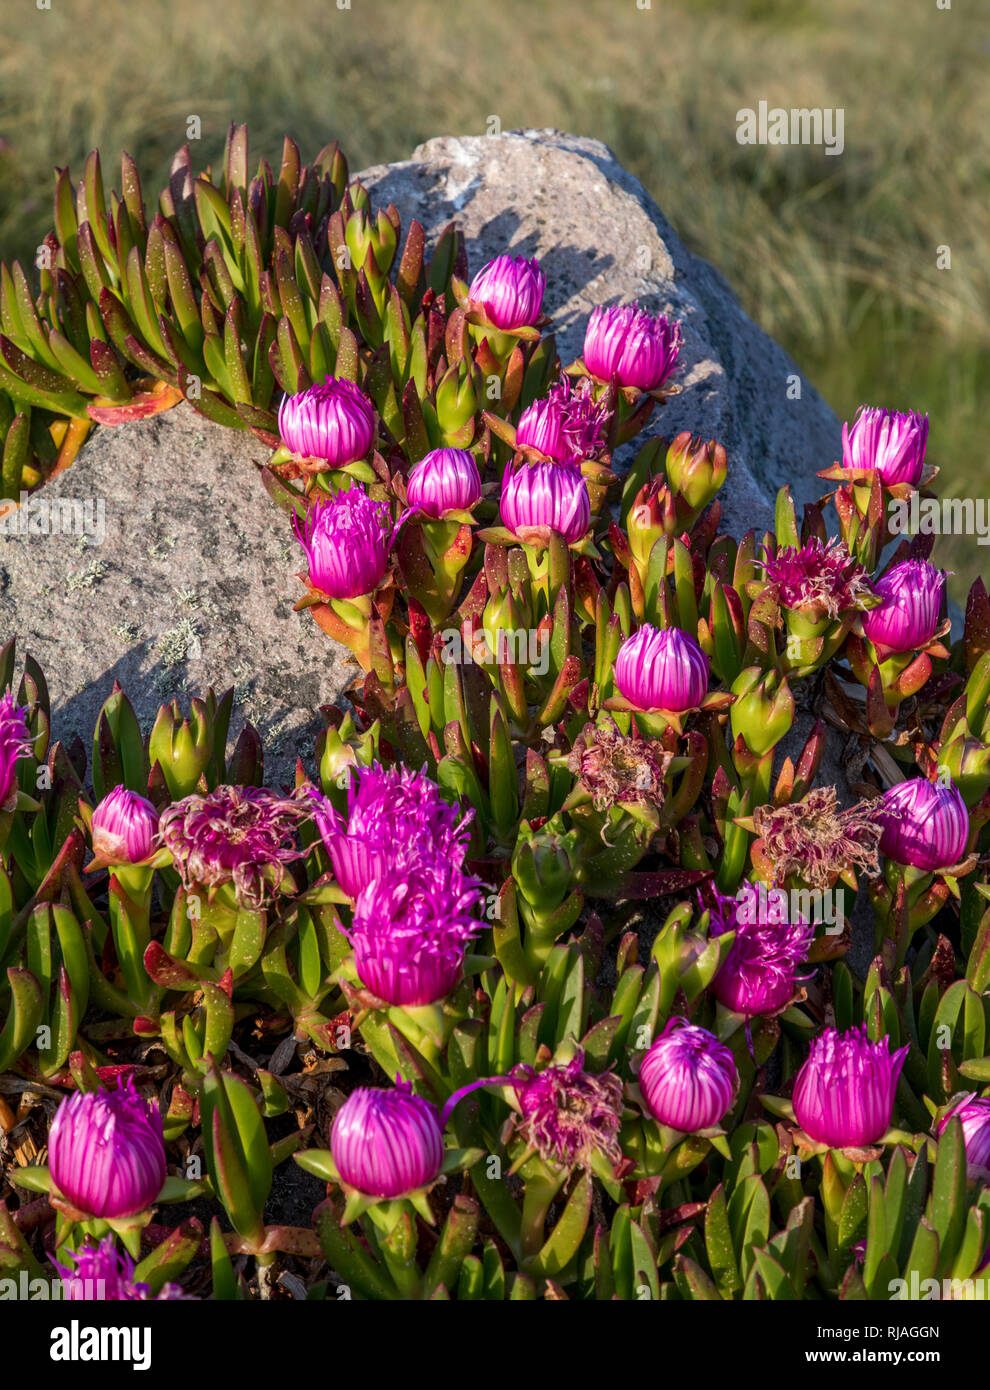 L'Alderney fig plant (carpobrotus) avec la marguerite comme fleurs violettes au printemps, il a des fruits comestibles et est communément connue sous le nom de fiction ou de glace-usine. Banque D'Images